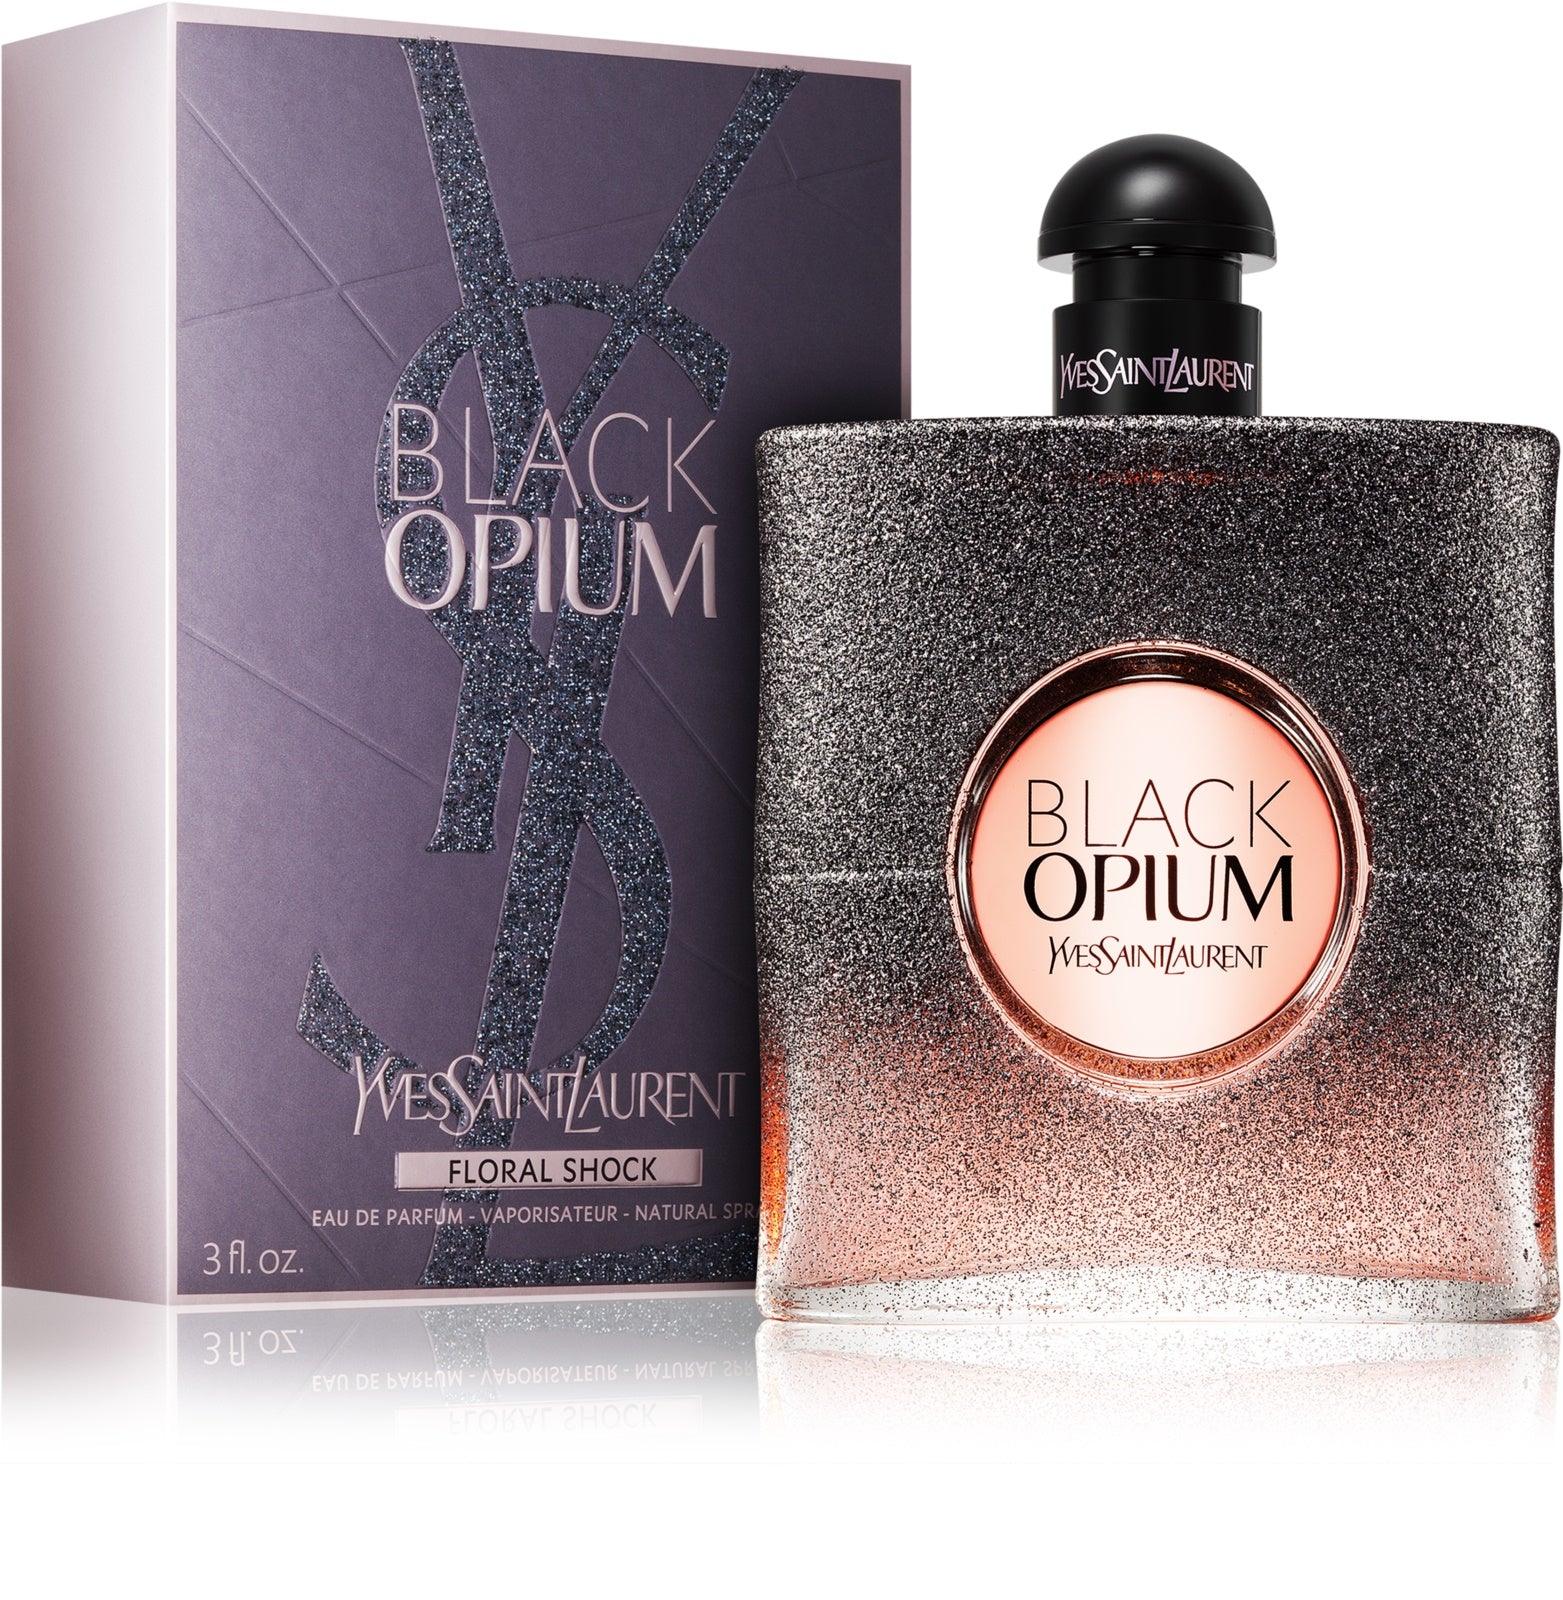 YSL Black Opium Floral Shock EDP Spray - Perfume Oasis